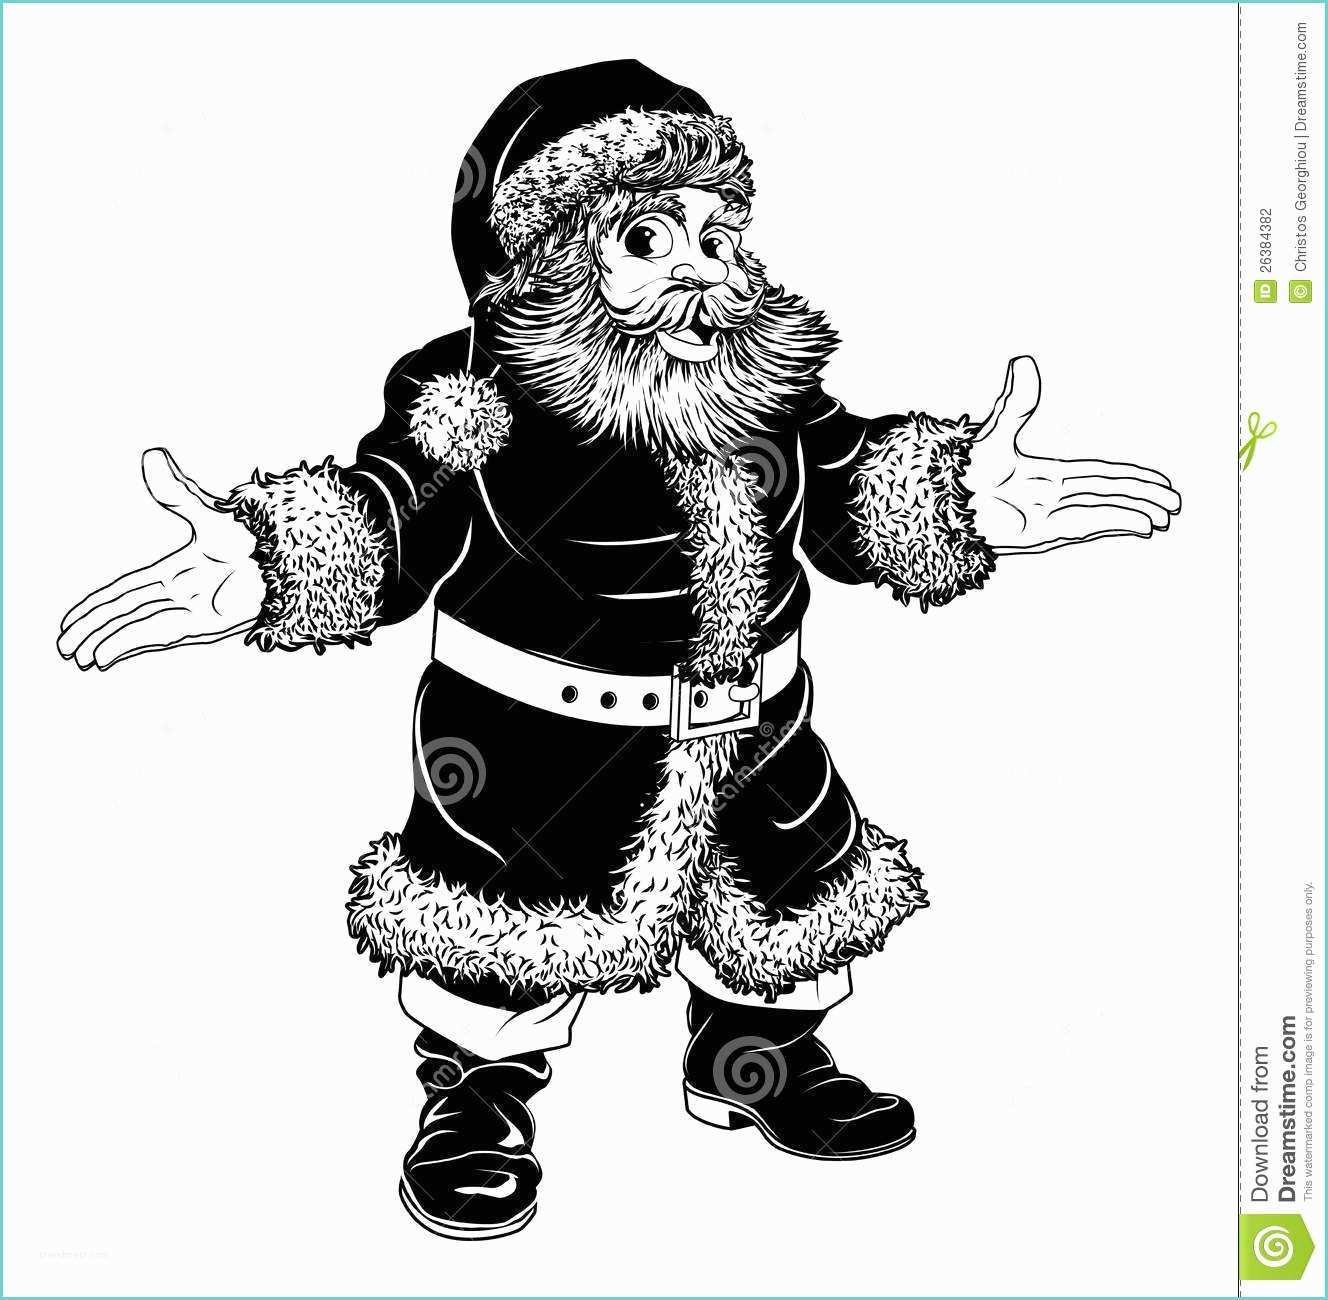 Image De Noel Noir Et Blanc Noël Noir Et Blanc Le Père Noël Illustration De Vecteur